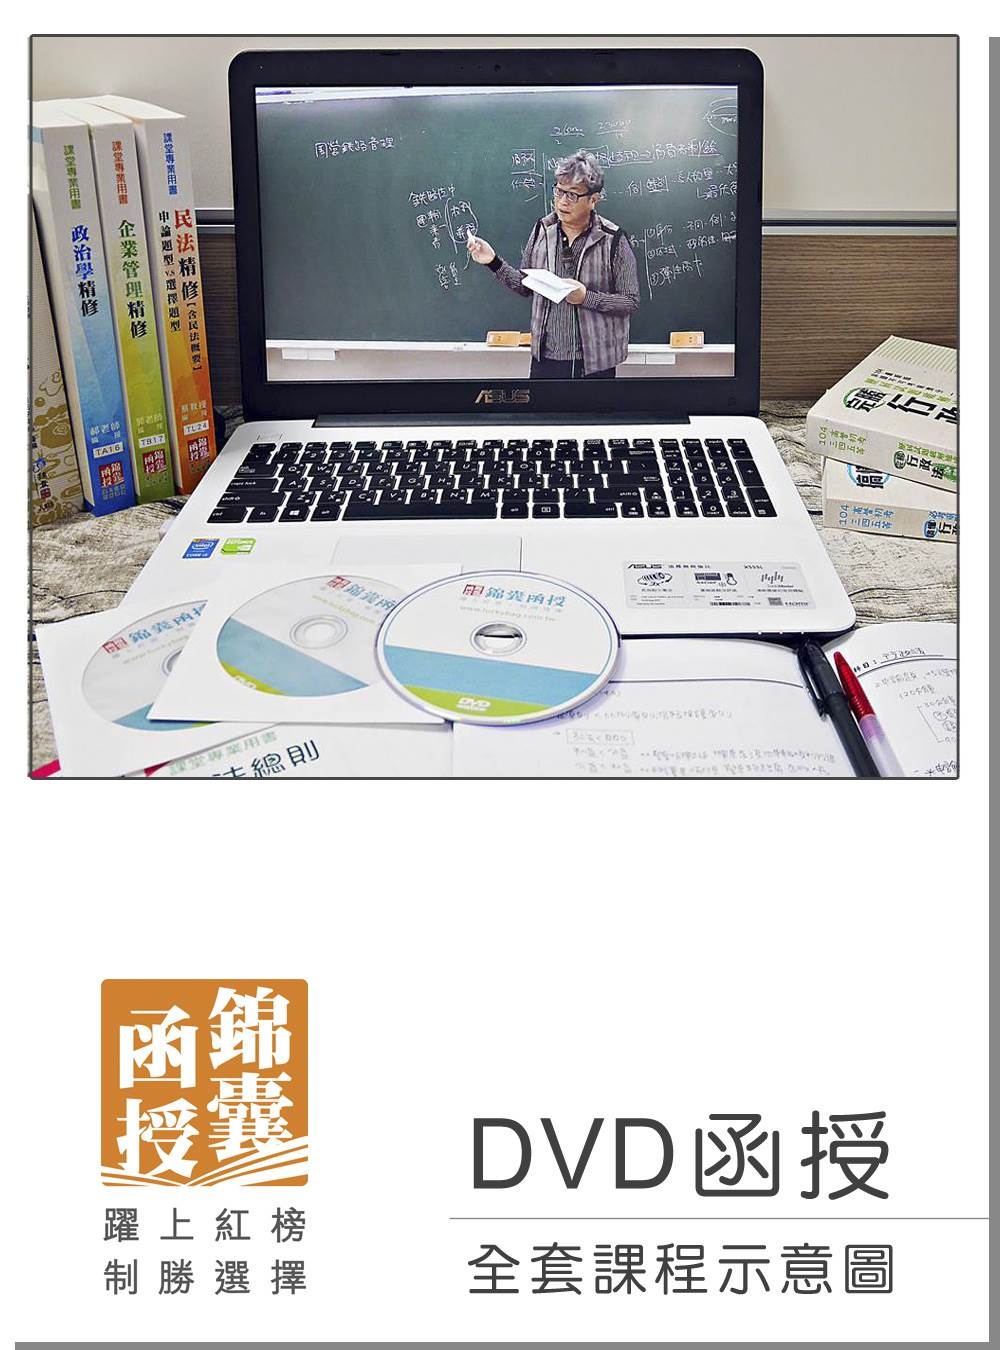 【DVD函授】106年華語領隊證照考試-全套課程